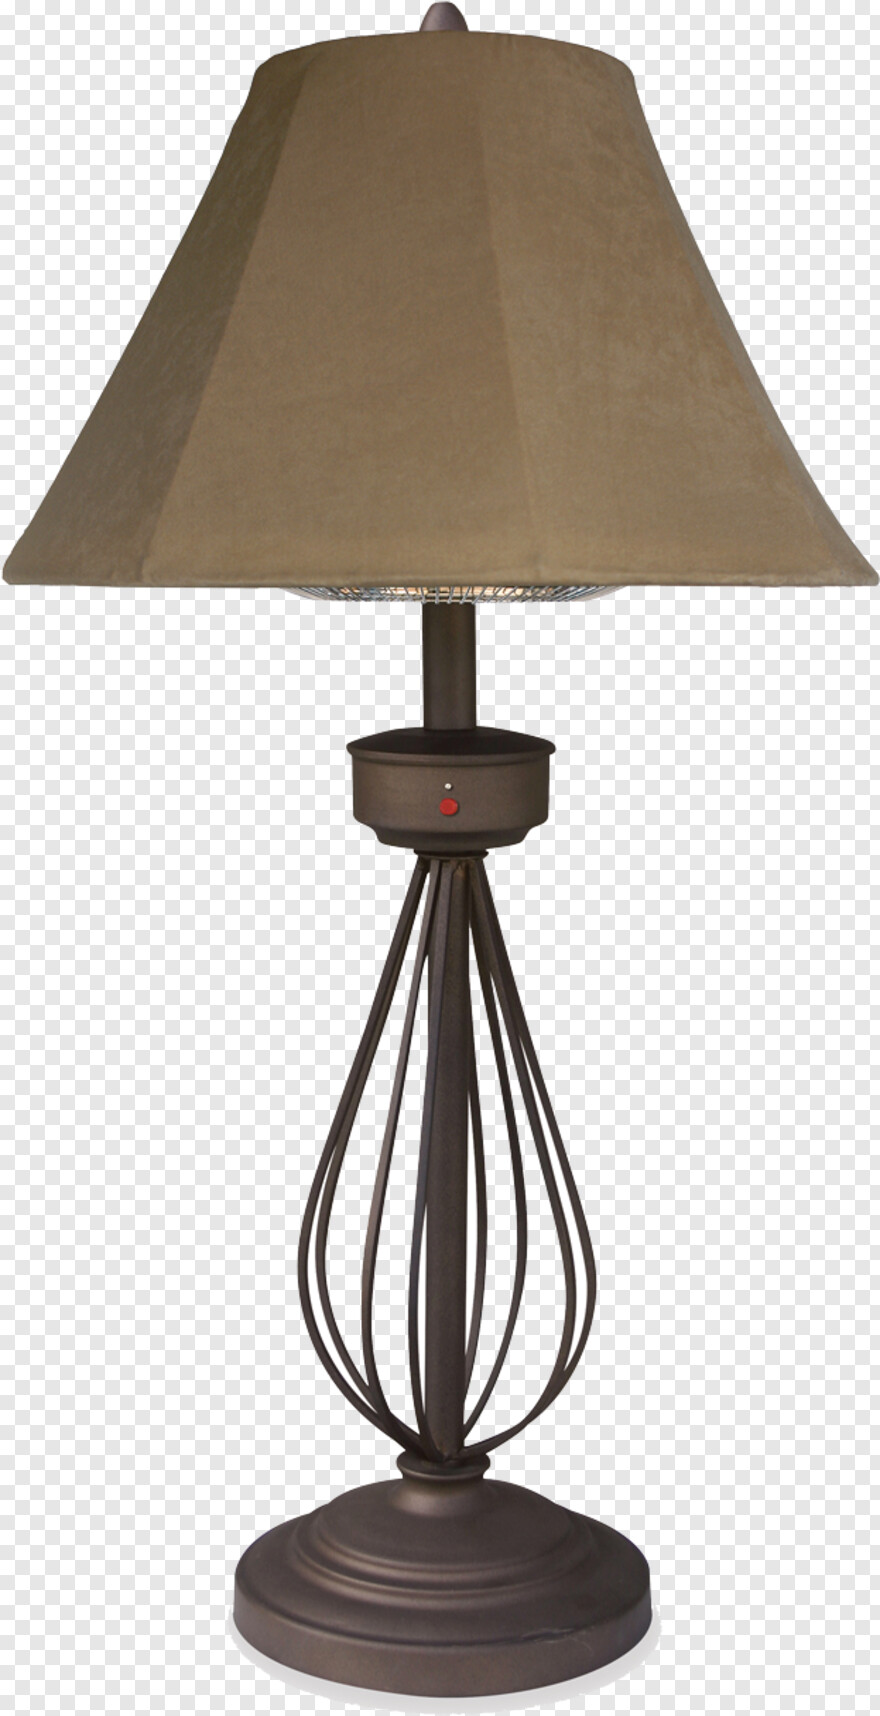 pixar-lamp # 817959